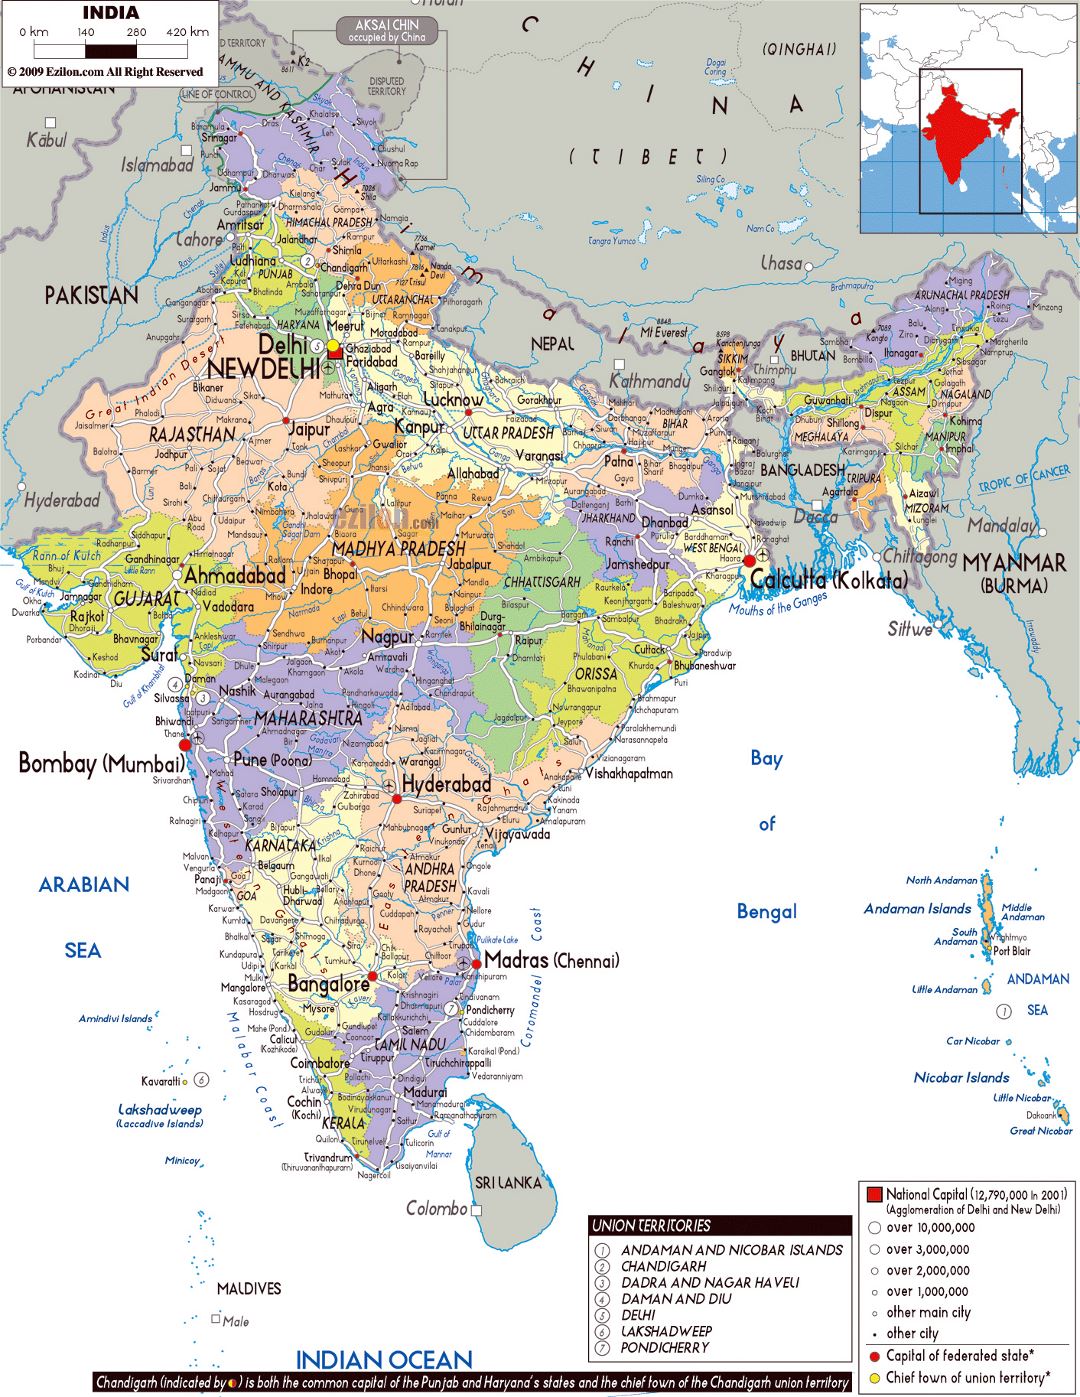 Grande mapa político y administrativo de la India con carreteras, ciudades y aeropuertos